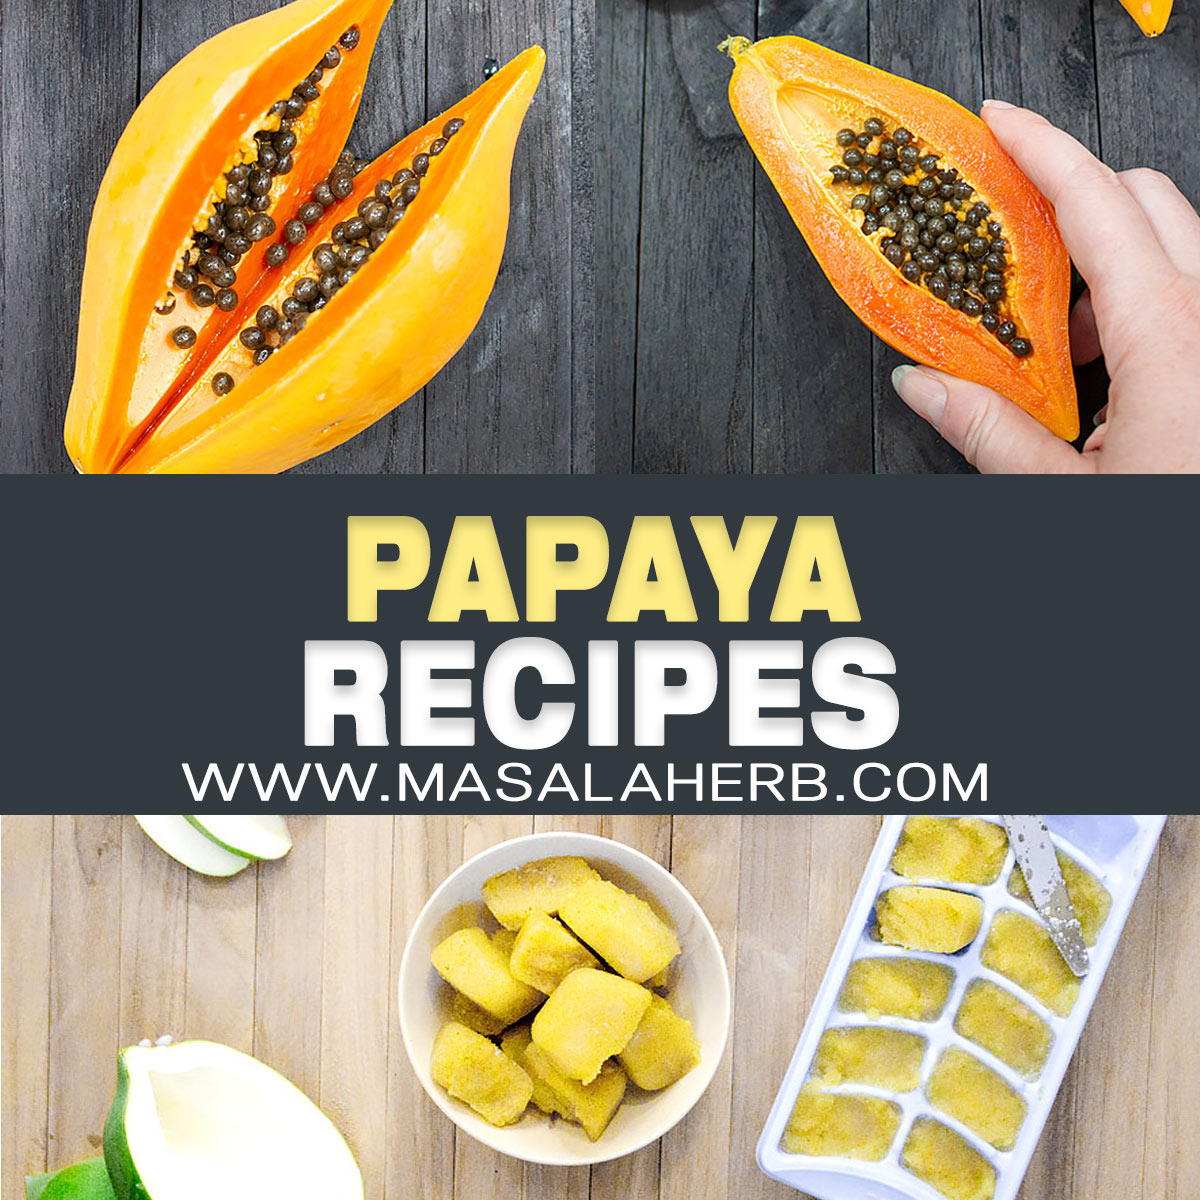 Papaya Recipes pin image